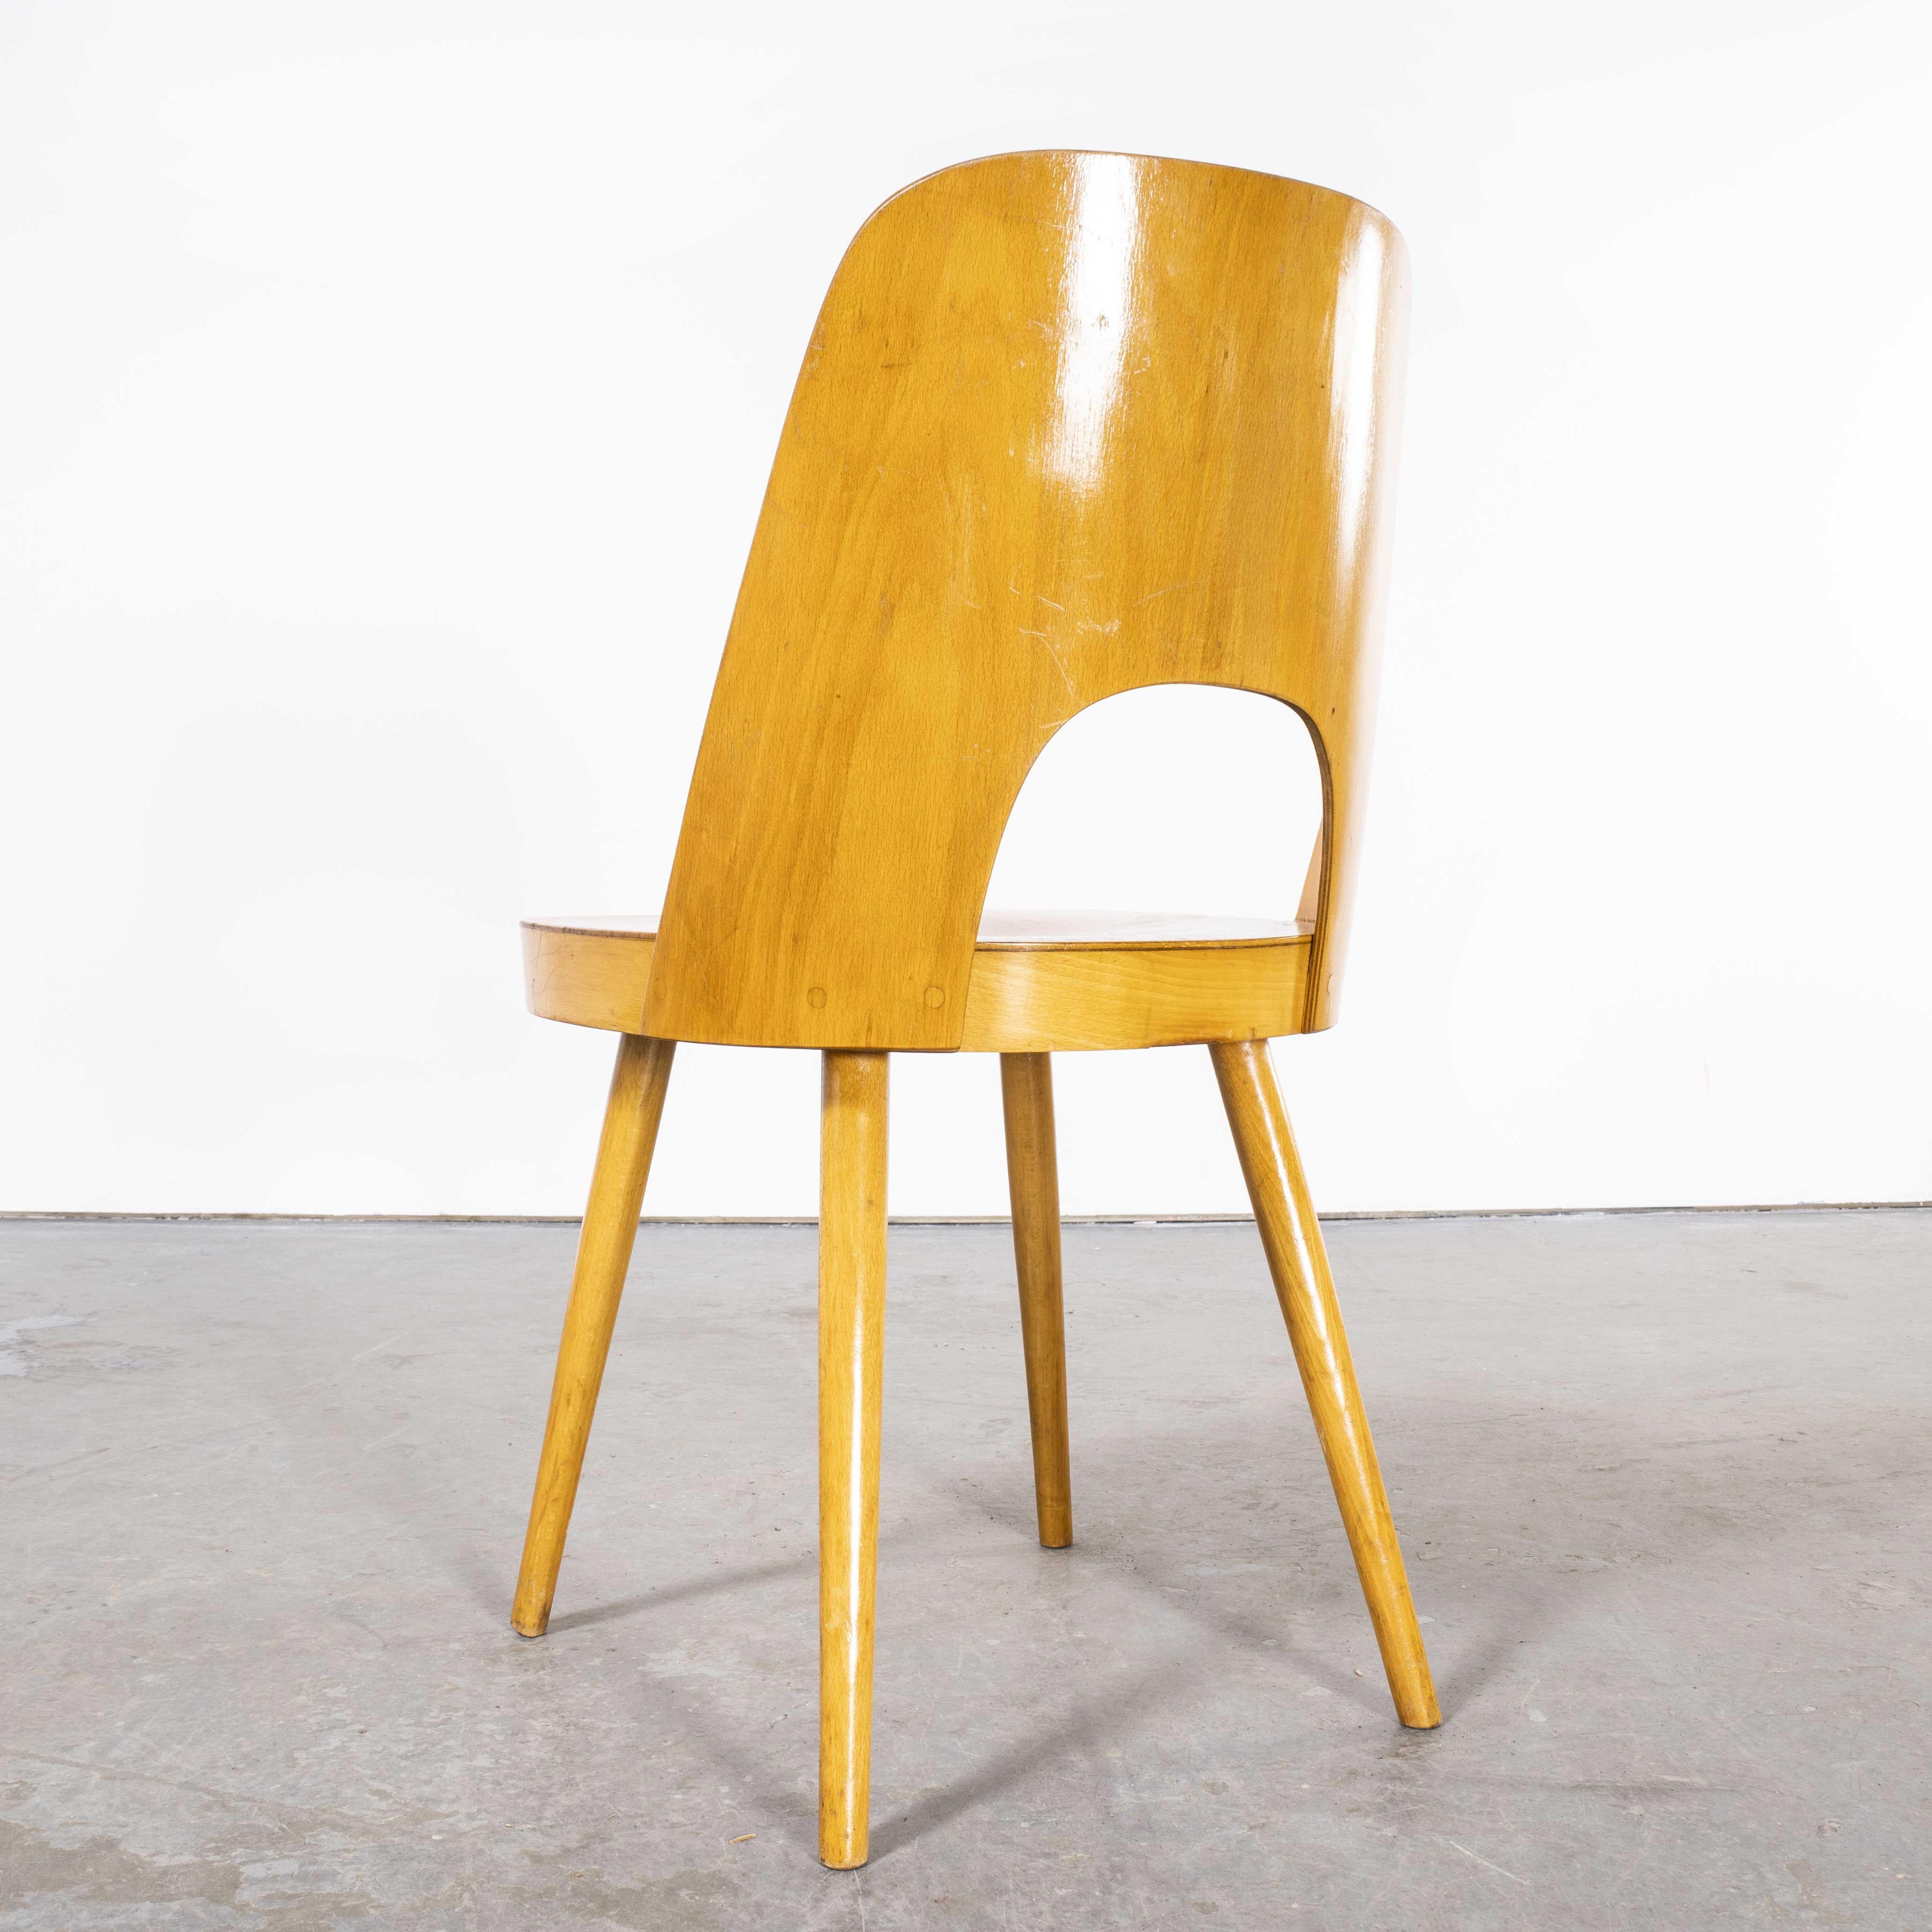 1950er Jahre Beistellstuhl aus Honigbuche - Oswald Haerdtl Modell 515 - Sechserpackung (1928)
1950's Honey Beistellstuhl aus Buche - Oswald Haerdtl Modell 515 - Satz von sechs (1928). Dieser Stuhl wurde von der berühmten tschechischen Firma Ton